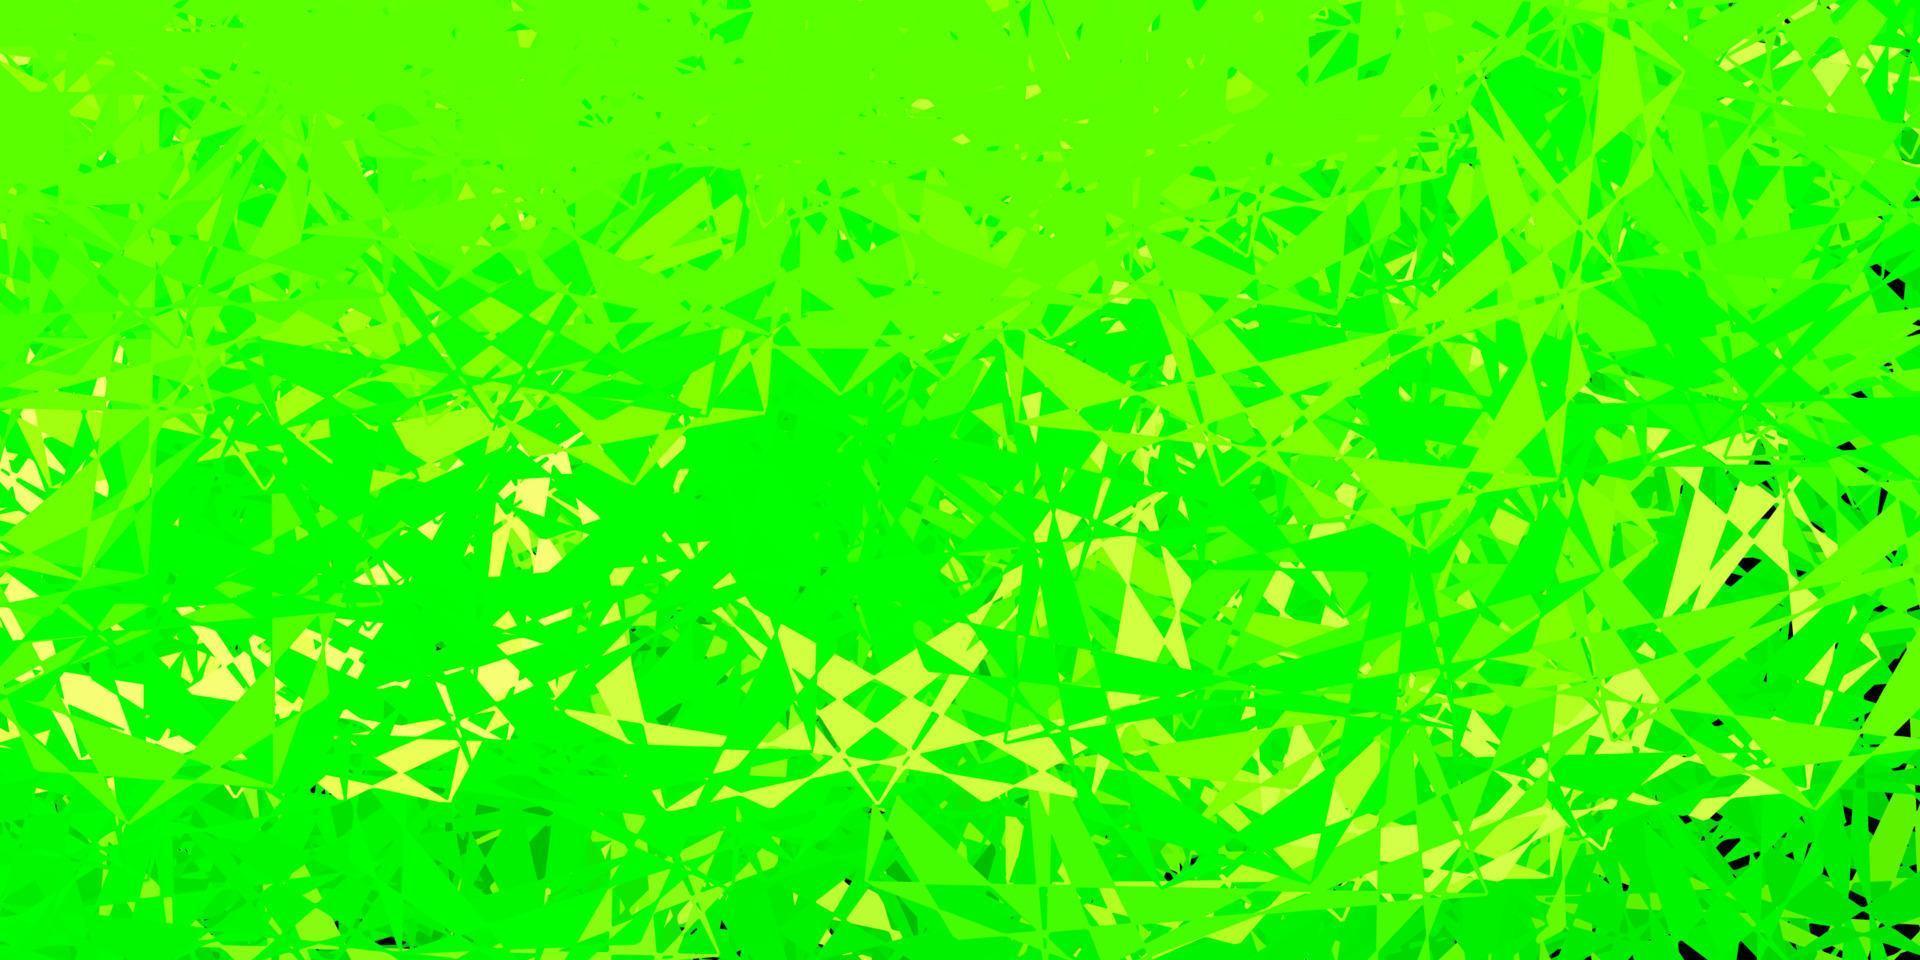 hellgrüne, gelbe Vektorschablone mit Dreiecksformen. vektor